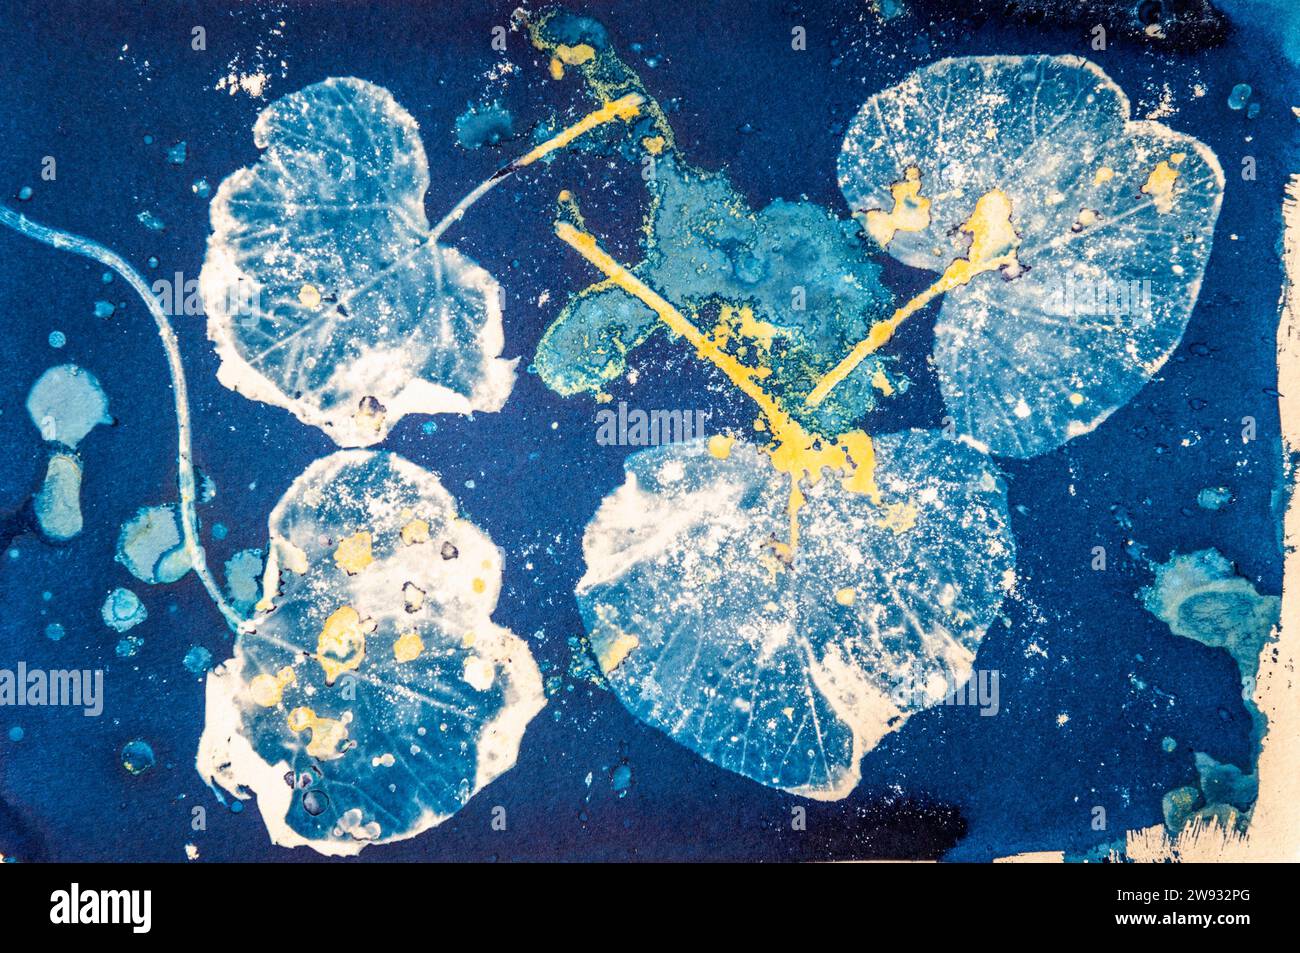 Eine Nahaufnahme des Pflanzenblatts, gedruckt mit einem alten fotografischen Verfahren namens Cyanotype, gemischt mit einem Kurkuma-Anthotype-Verfahren. Stockfoto